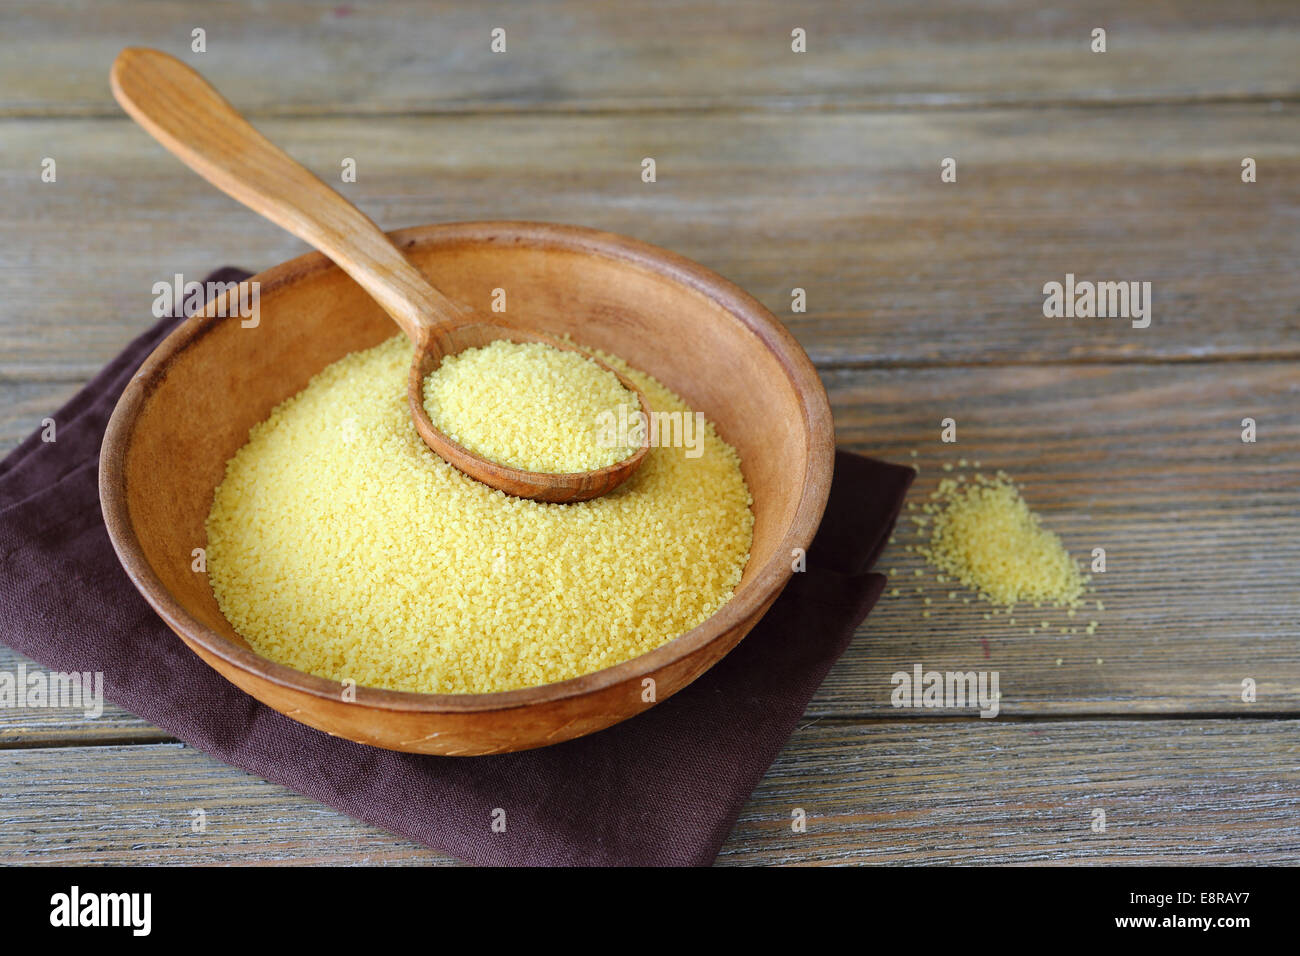 Couscous crus dans un bol d'argile sur des planches, arabe Banque D'Images